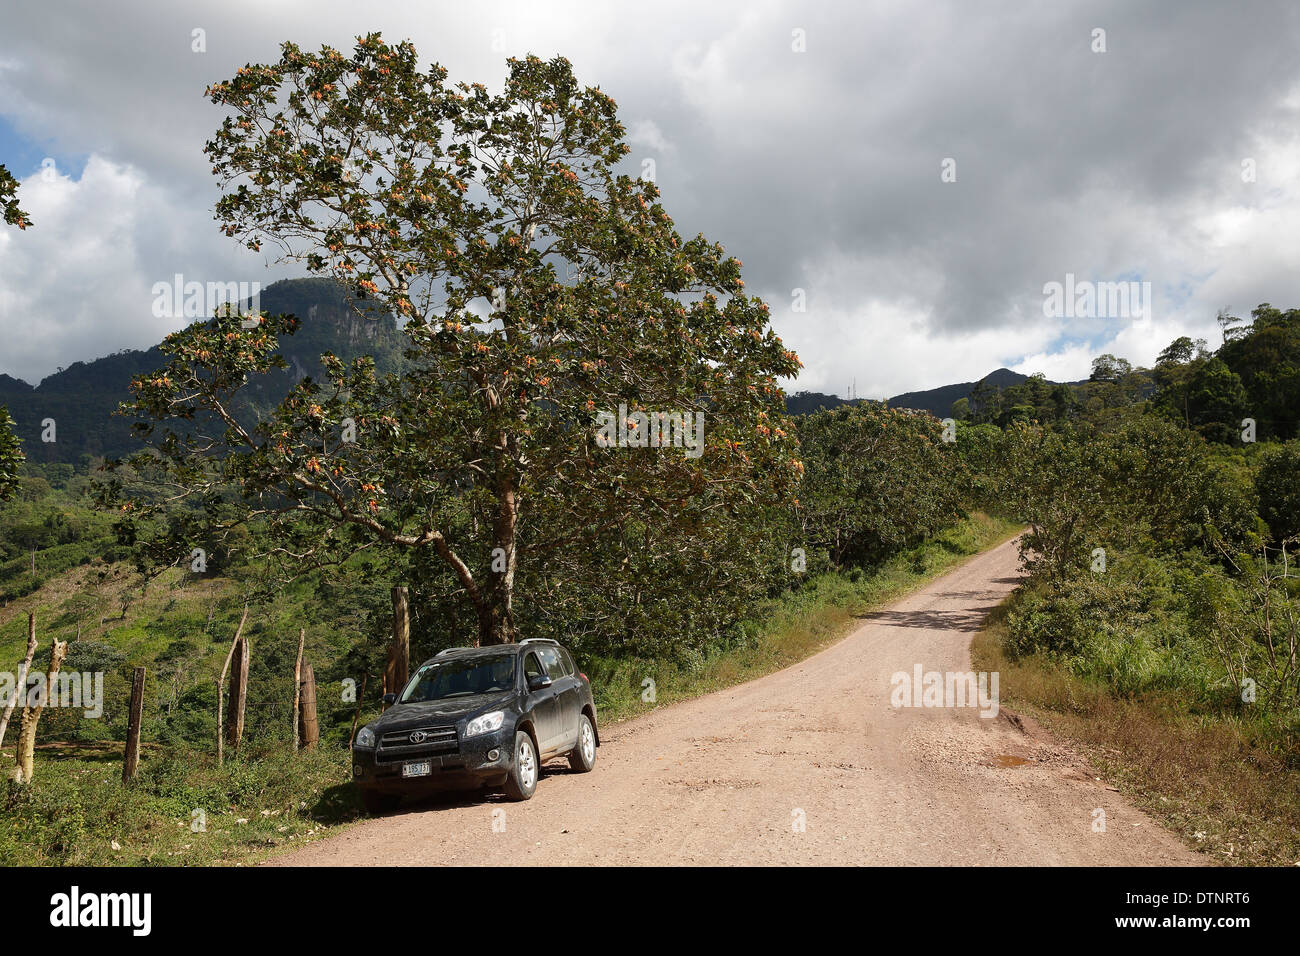 Auto auf einer unbefestigten Straße, Peñas Blancas, Nicaragua Stockfoto